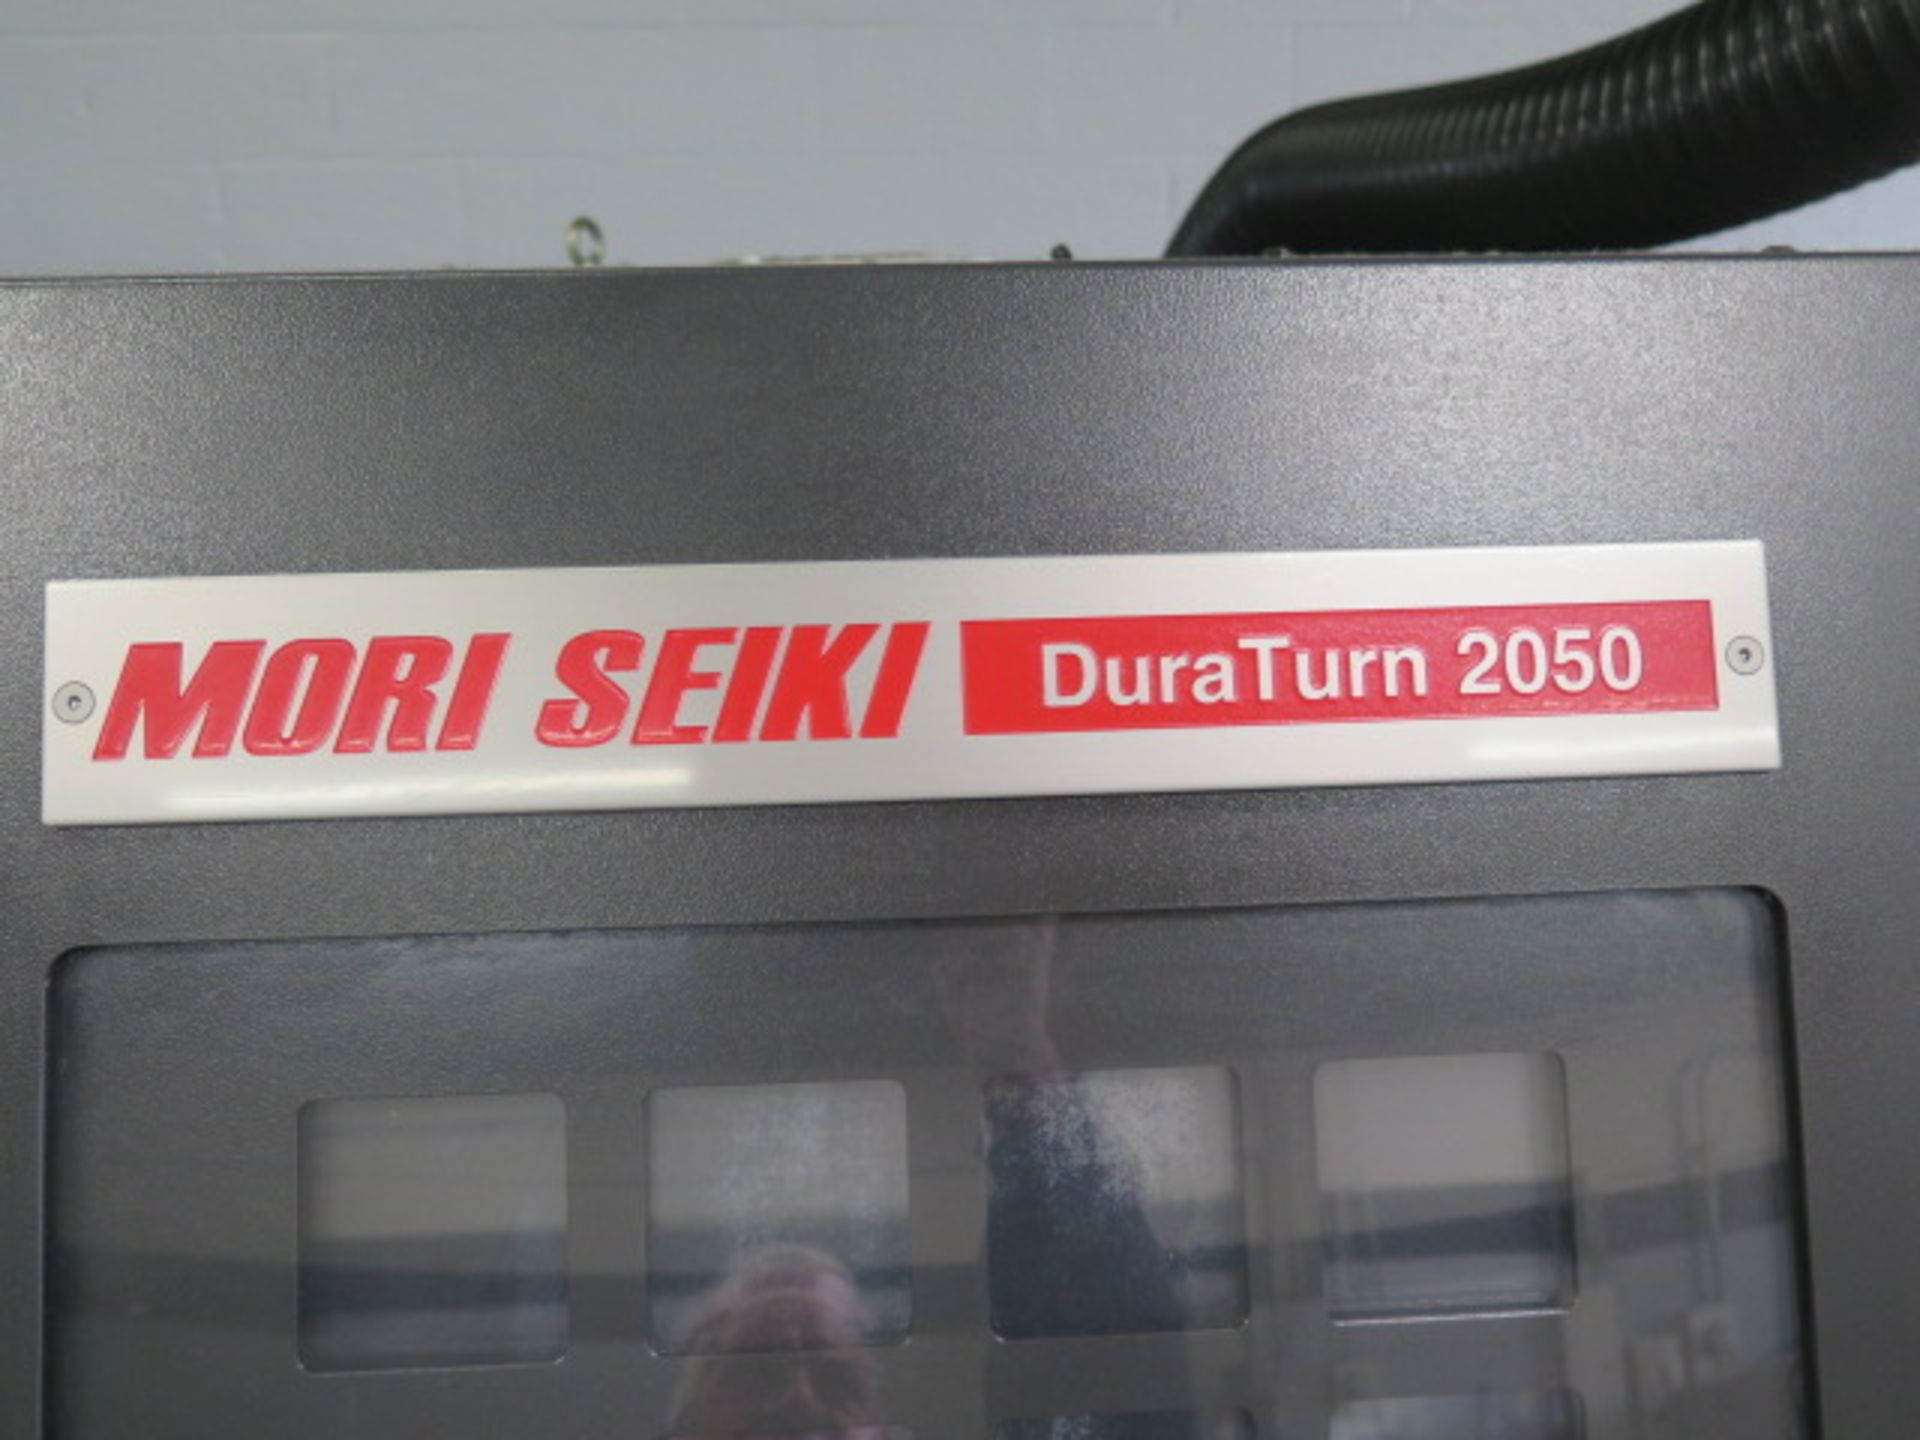 2007 Mori Seiki Dura Turn 2050 CNC Turning Center s/n DT205GG0201 w/ Mori Seiki MSC-504 Controls, - Image 4 of 26